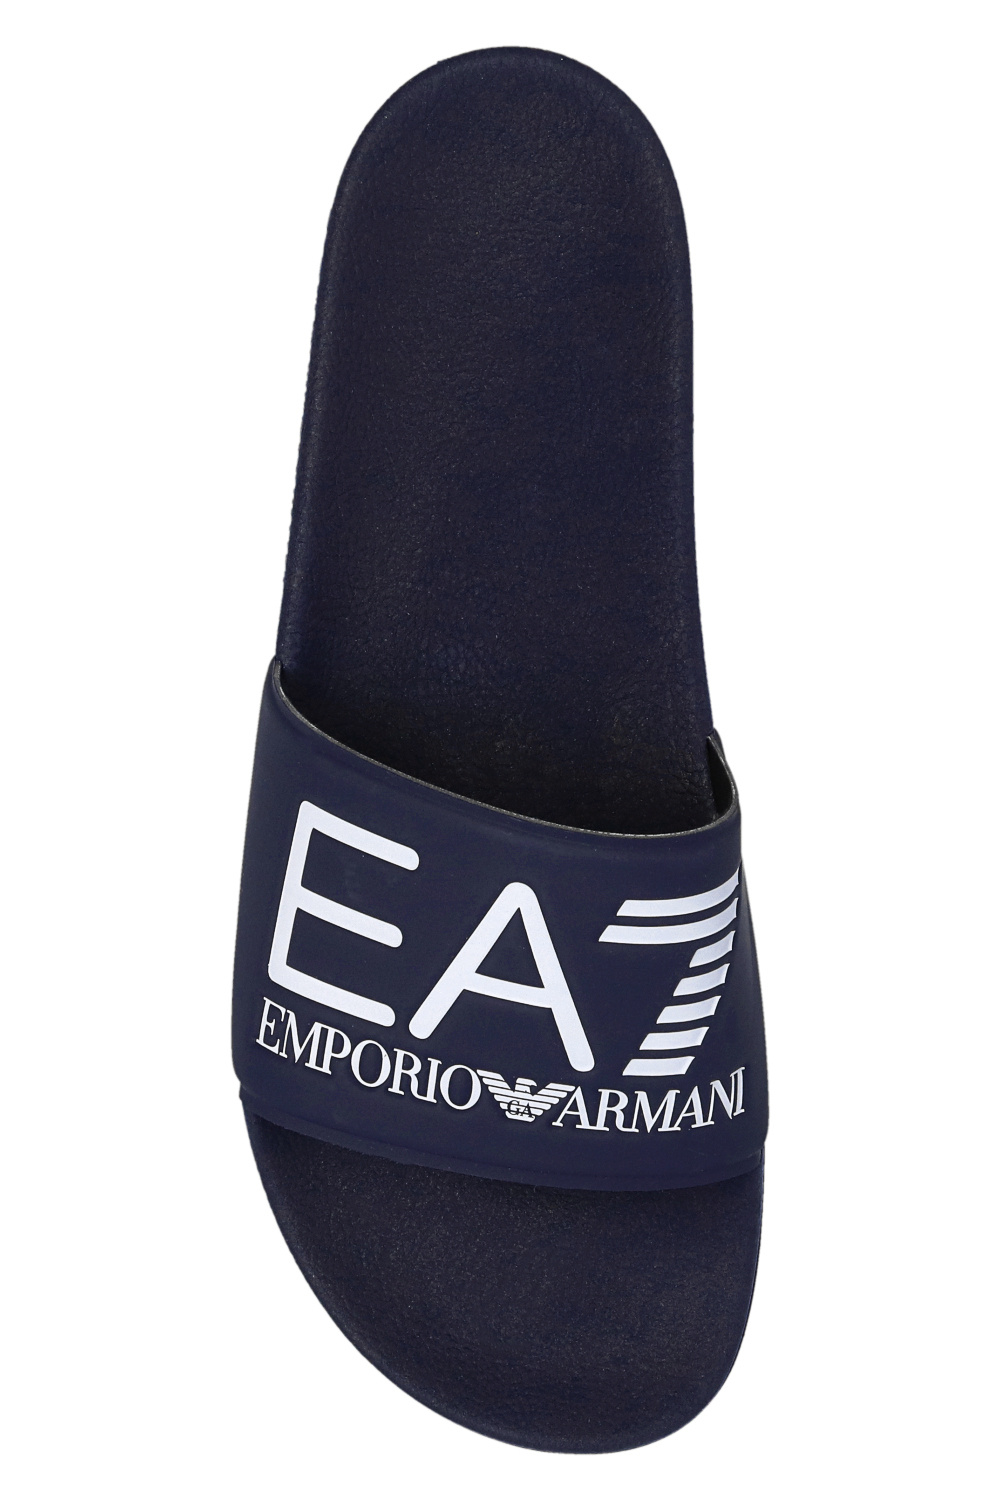 Emporio Armani spread-collar jacket Slides with logo